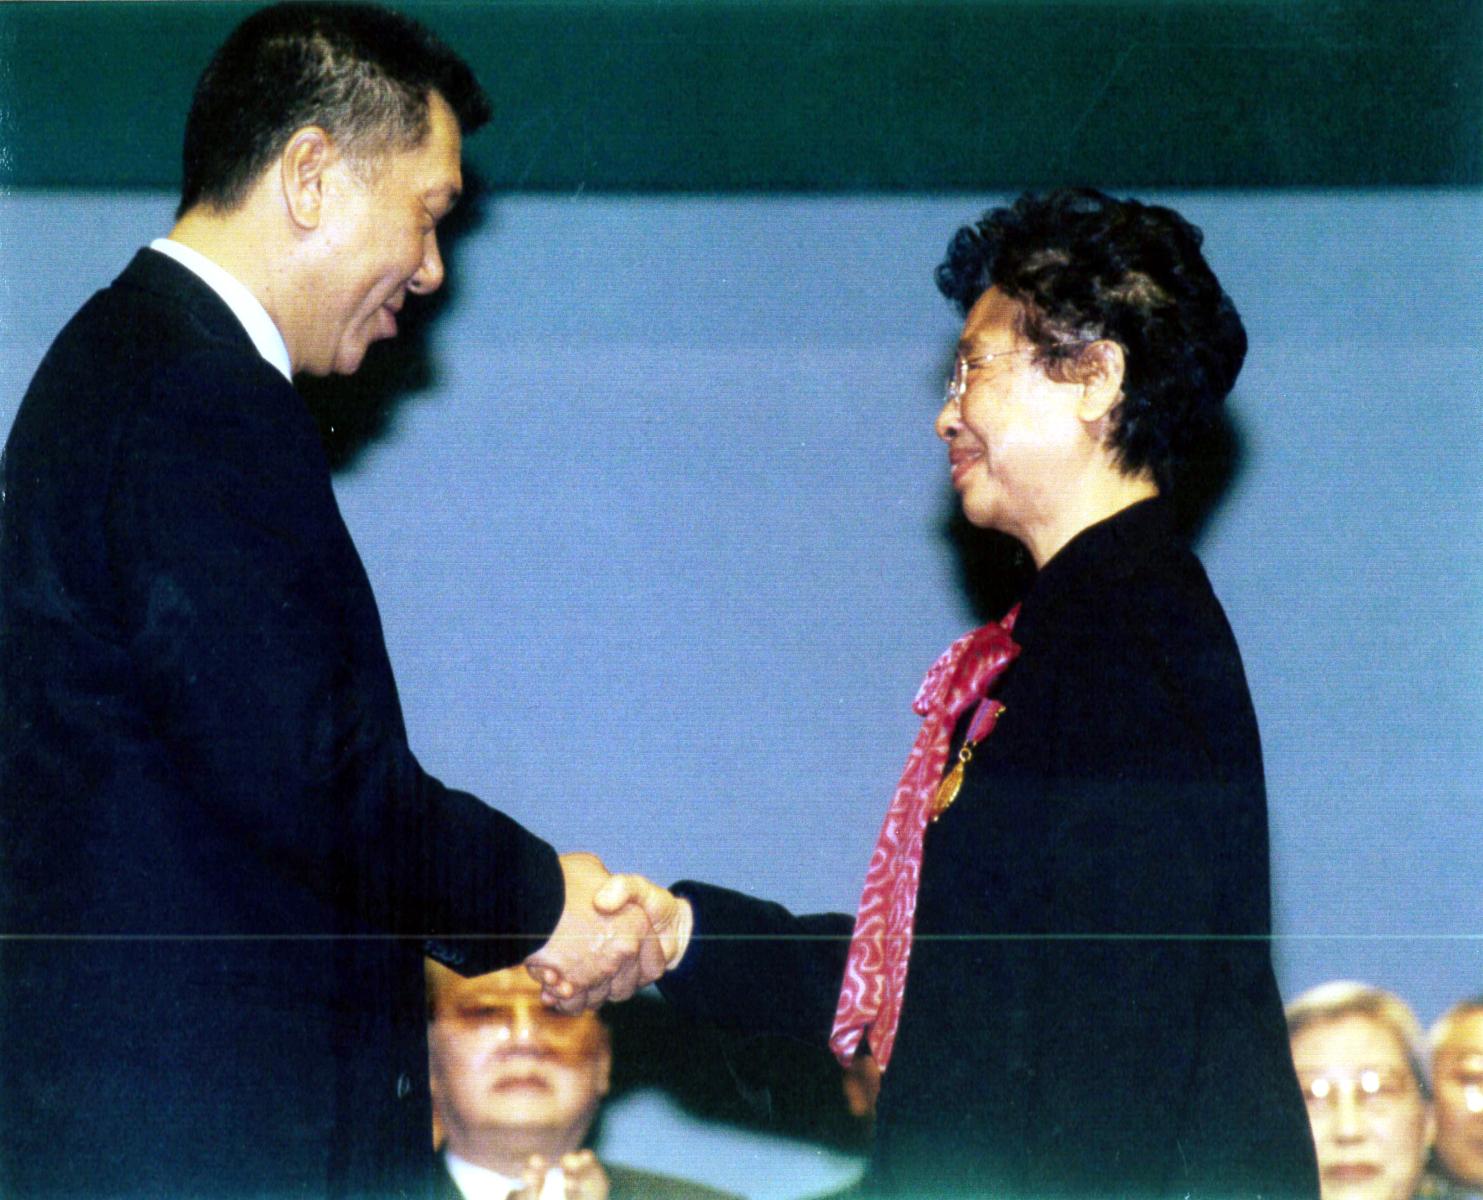 我校劉羡冰前校長於2001年獲頒授教育功績勳章